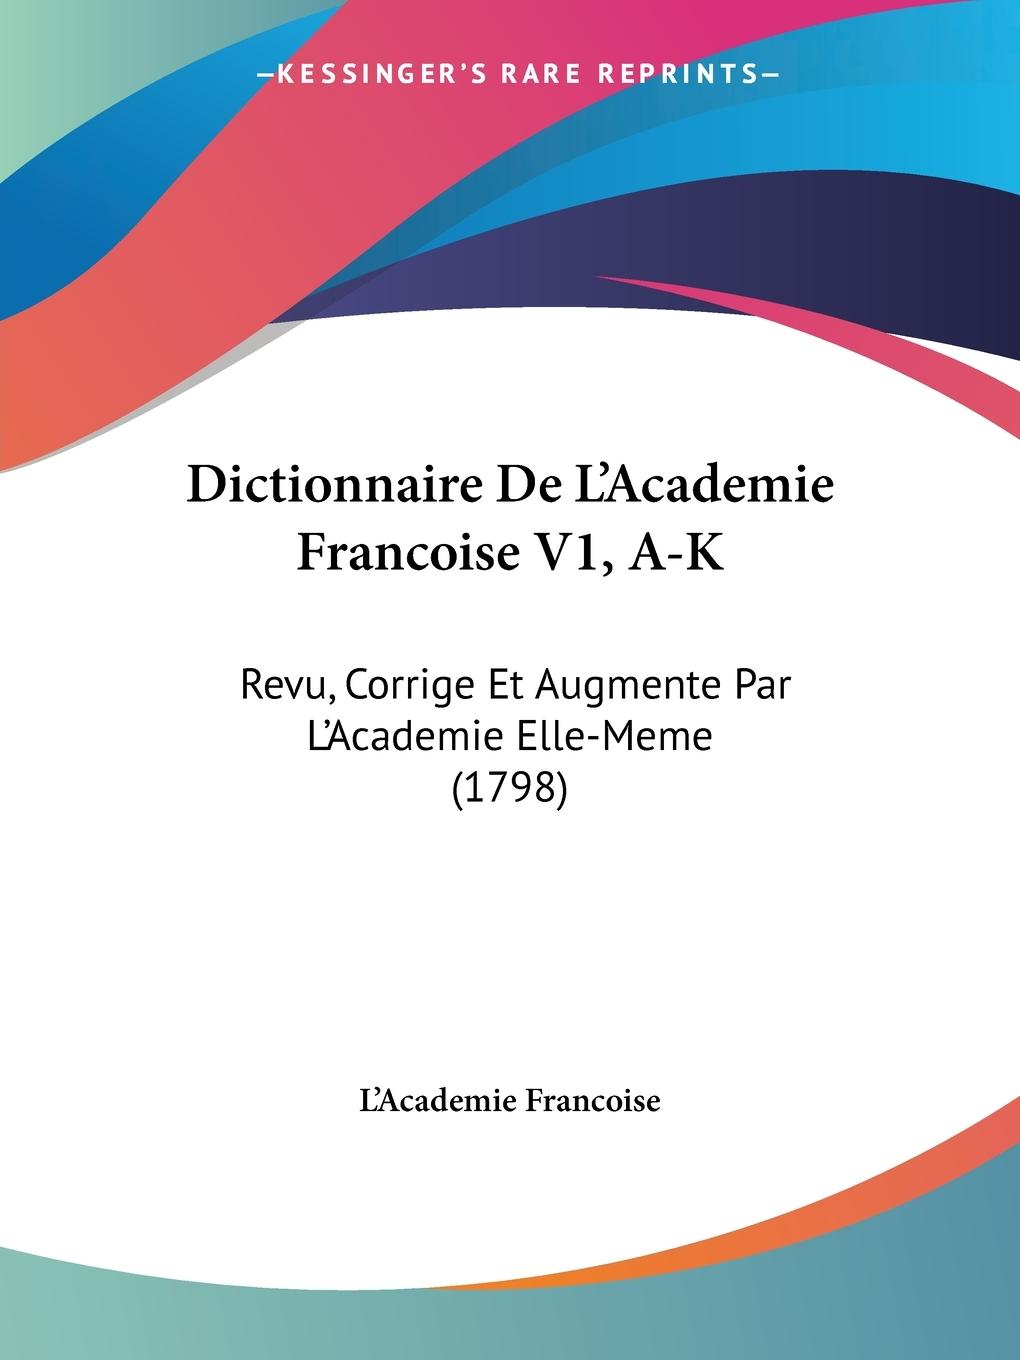 Dictionnaire De L Academie Francoise V1, A-K - L Academie Francoise